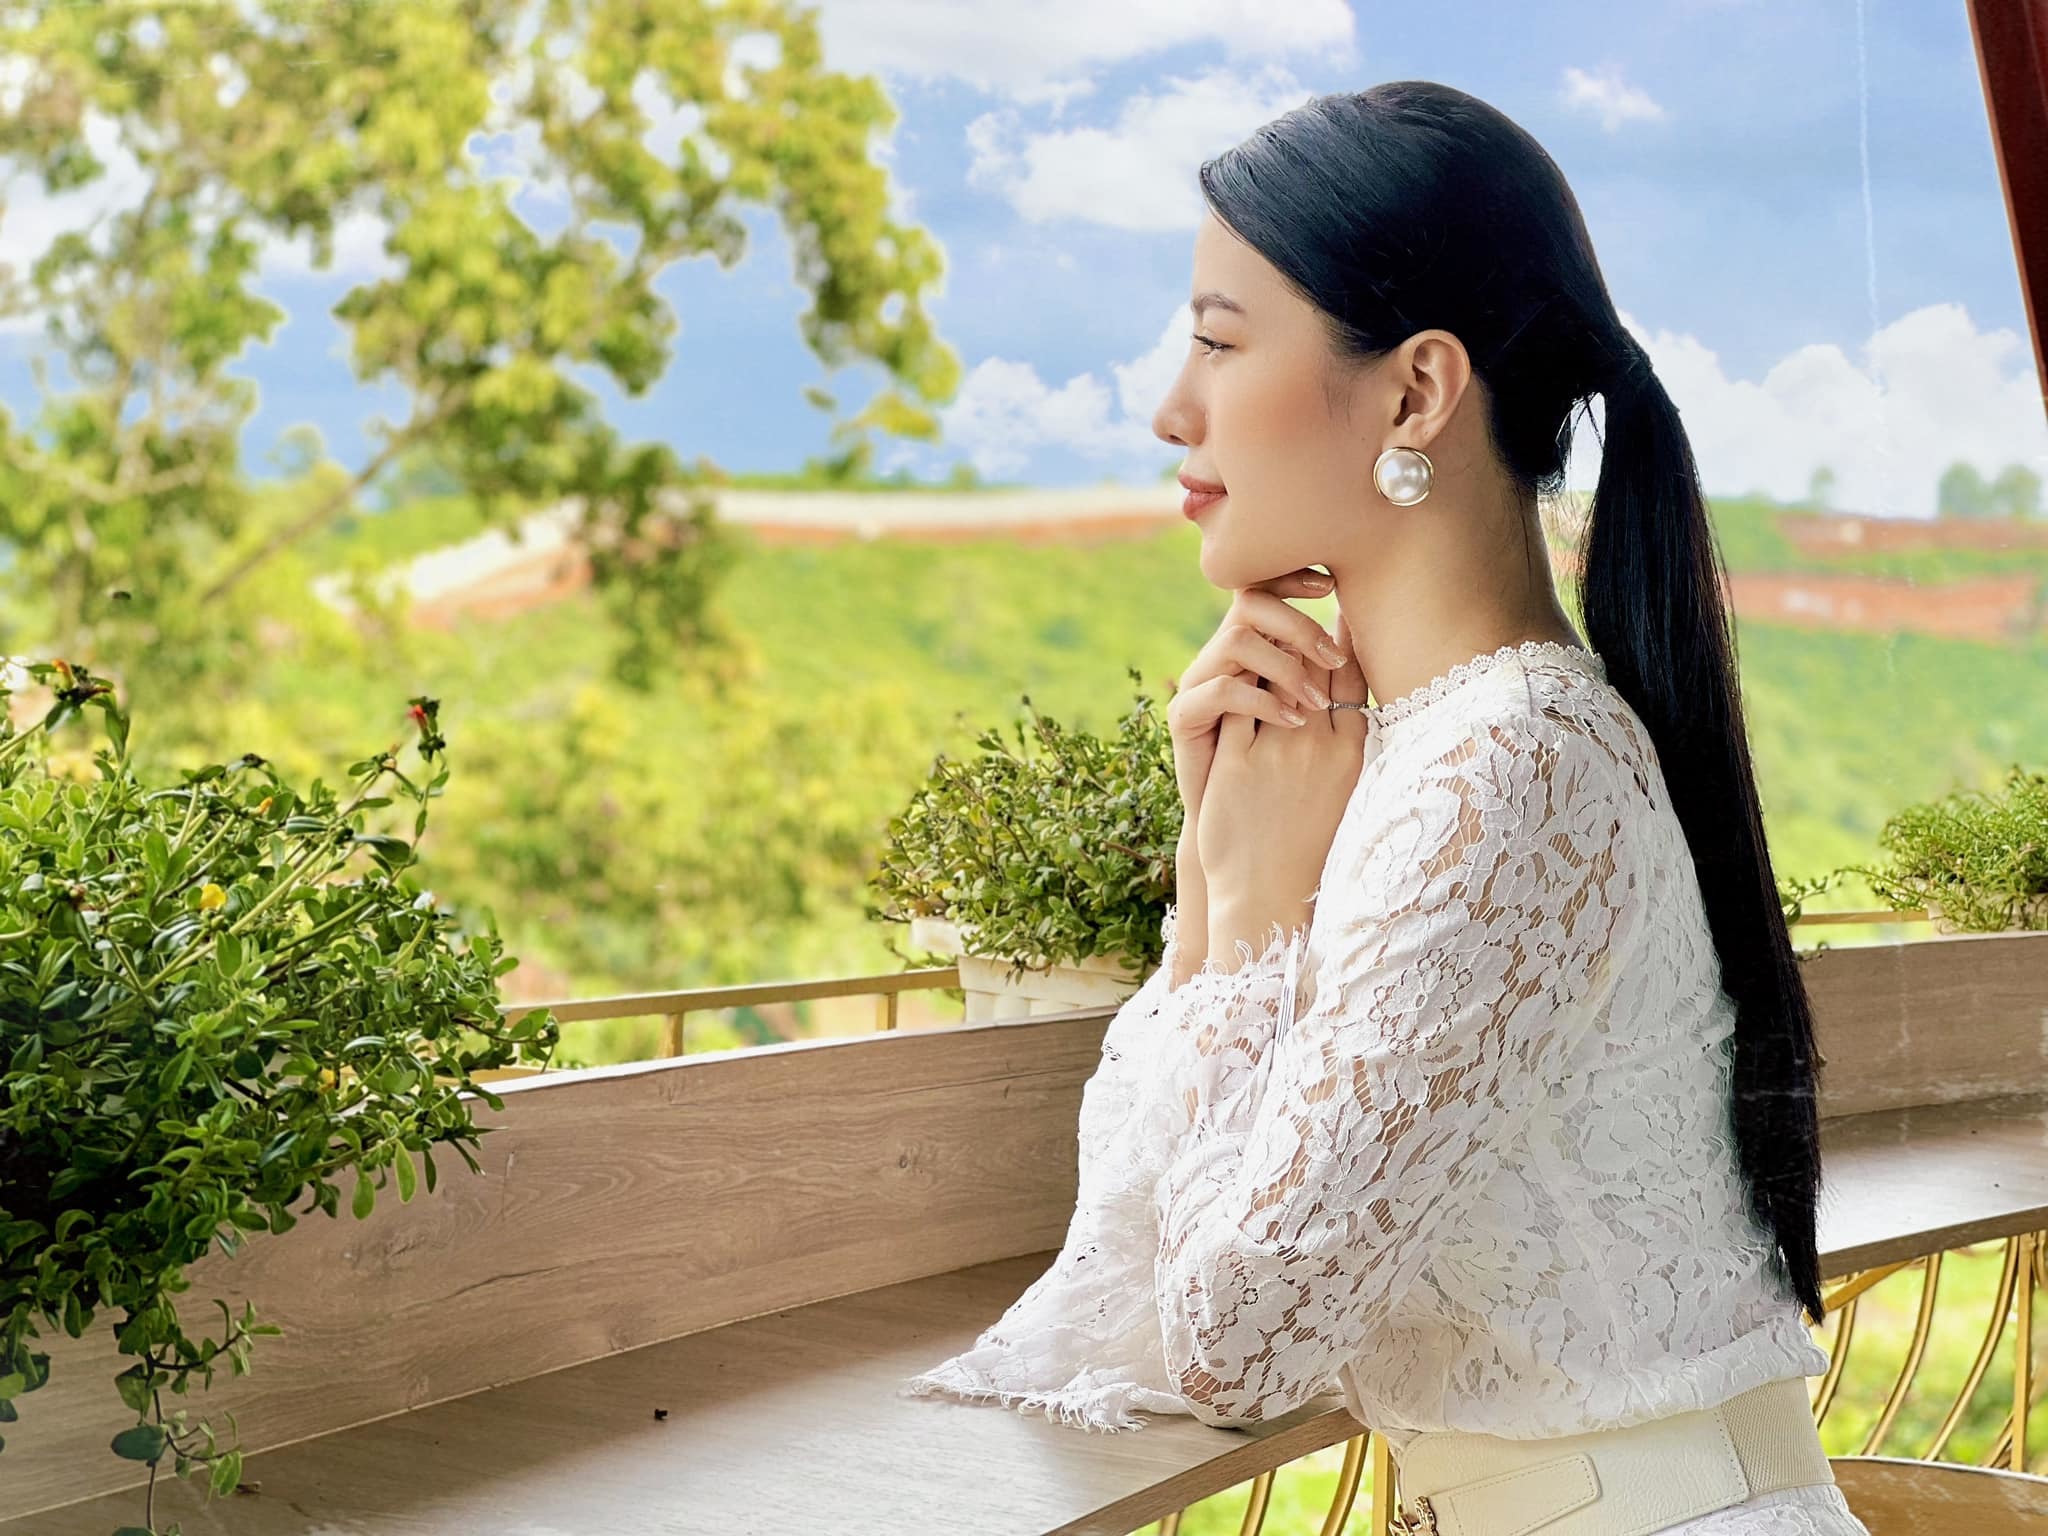 Hoàng Nhung - Top 16 Hoa hậu Hoàn vũ Việt Nam 2022: ‘Hãy cứ cho đi và đừng mong nhận lại’